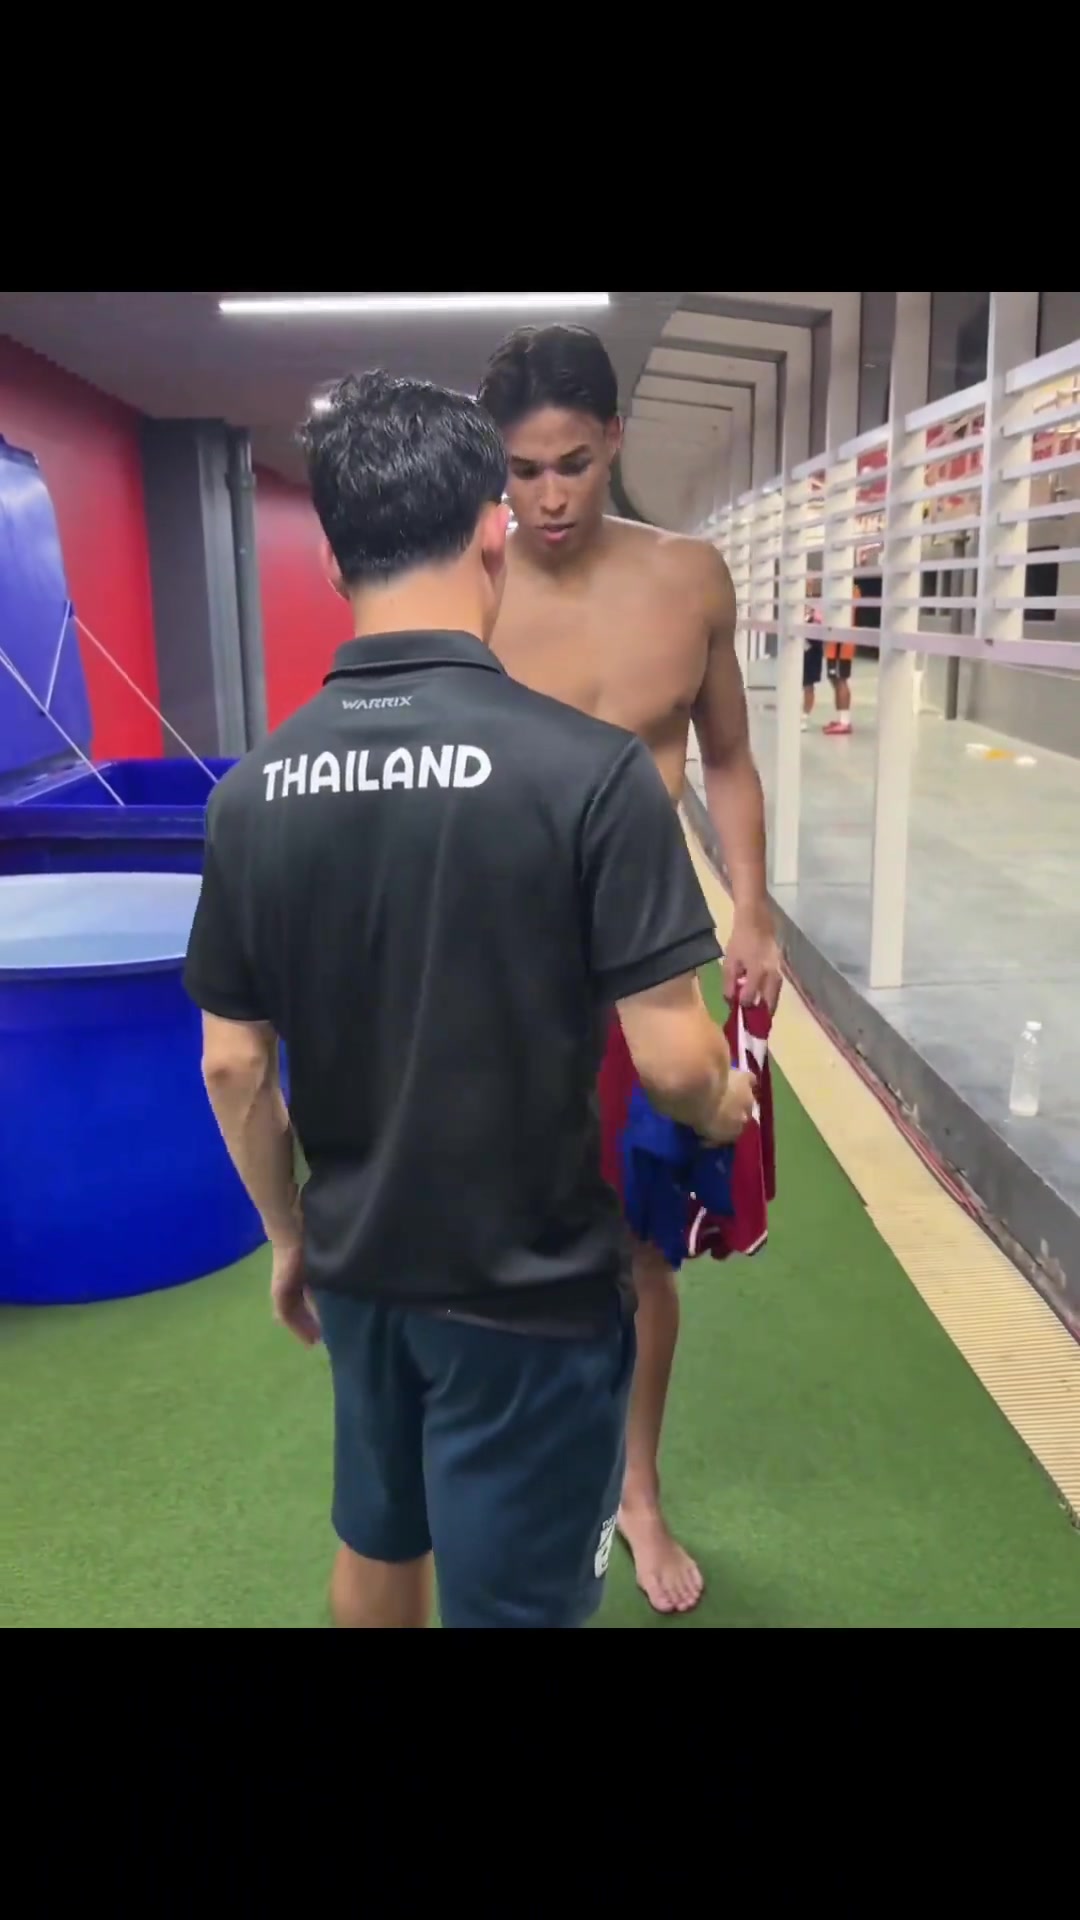 泰国队七号素巴楚赛后主动找到凡迪先生交换球衣